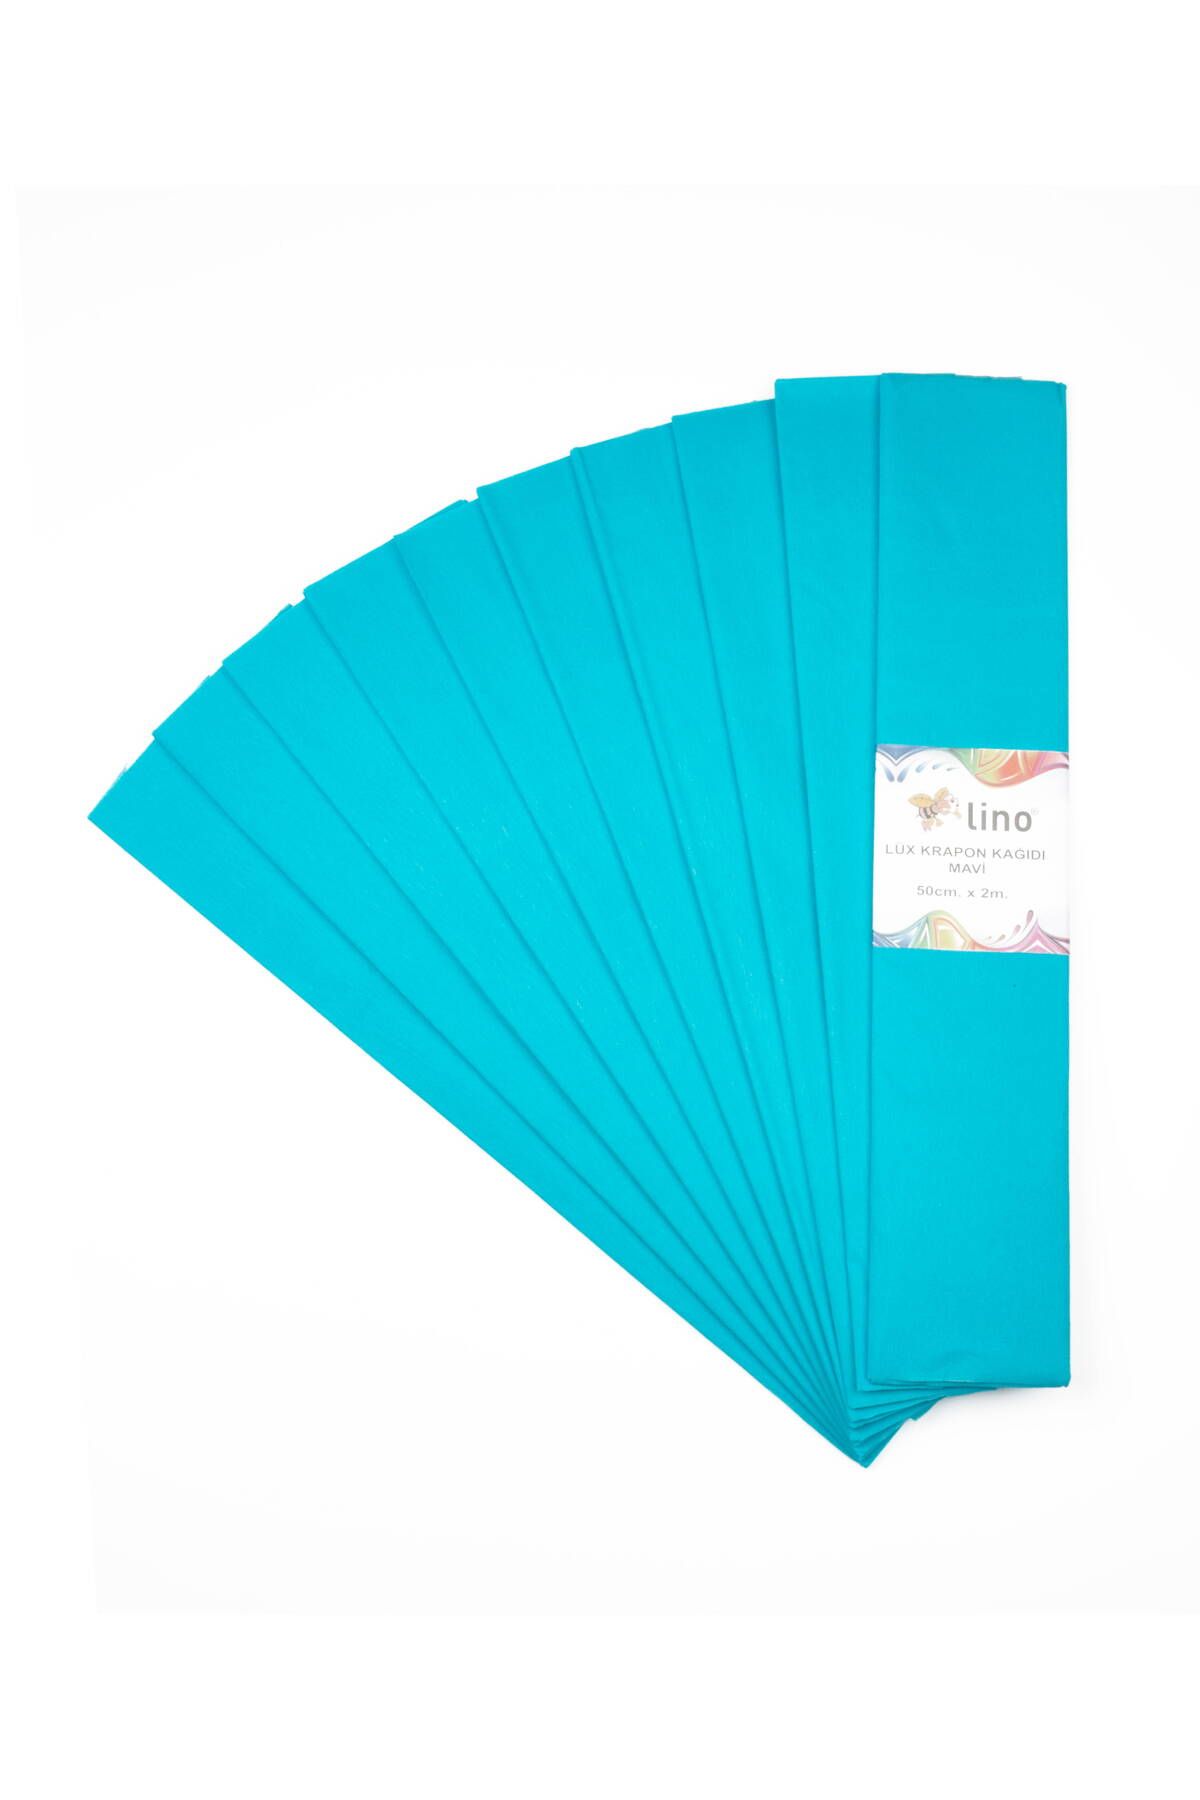 Lino Lüx Krapon Kağıdı Mavi 10lu (50X200 CM.)